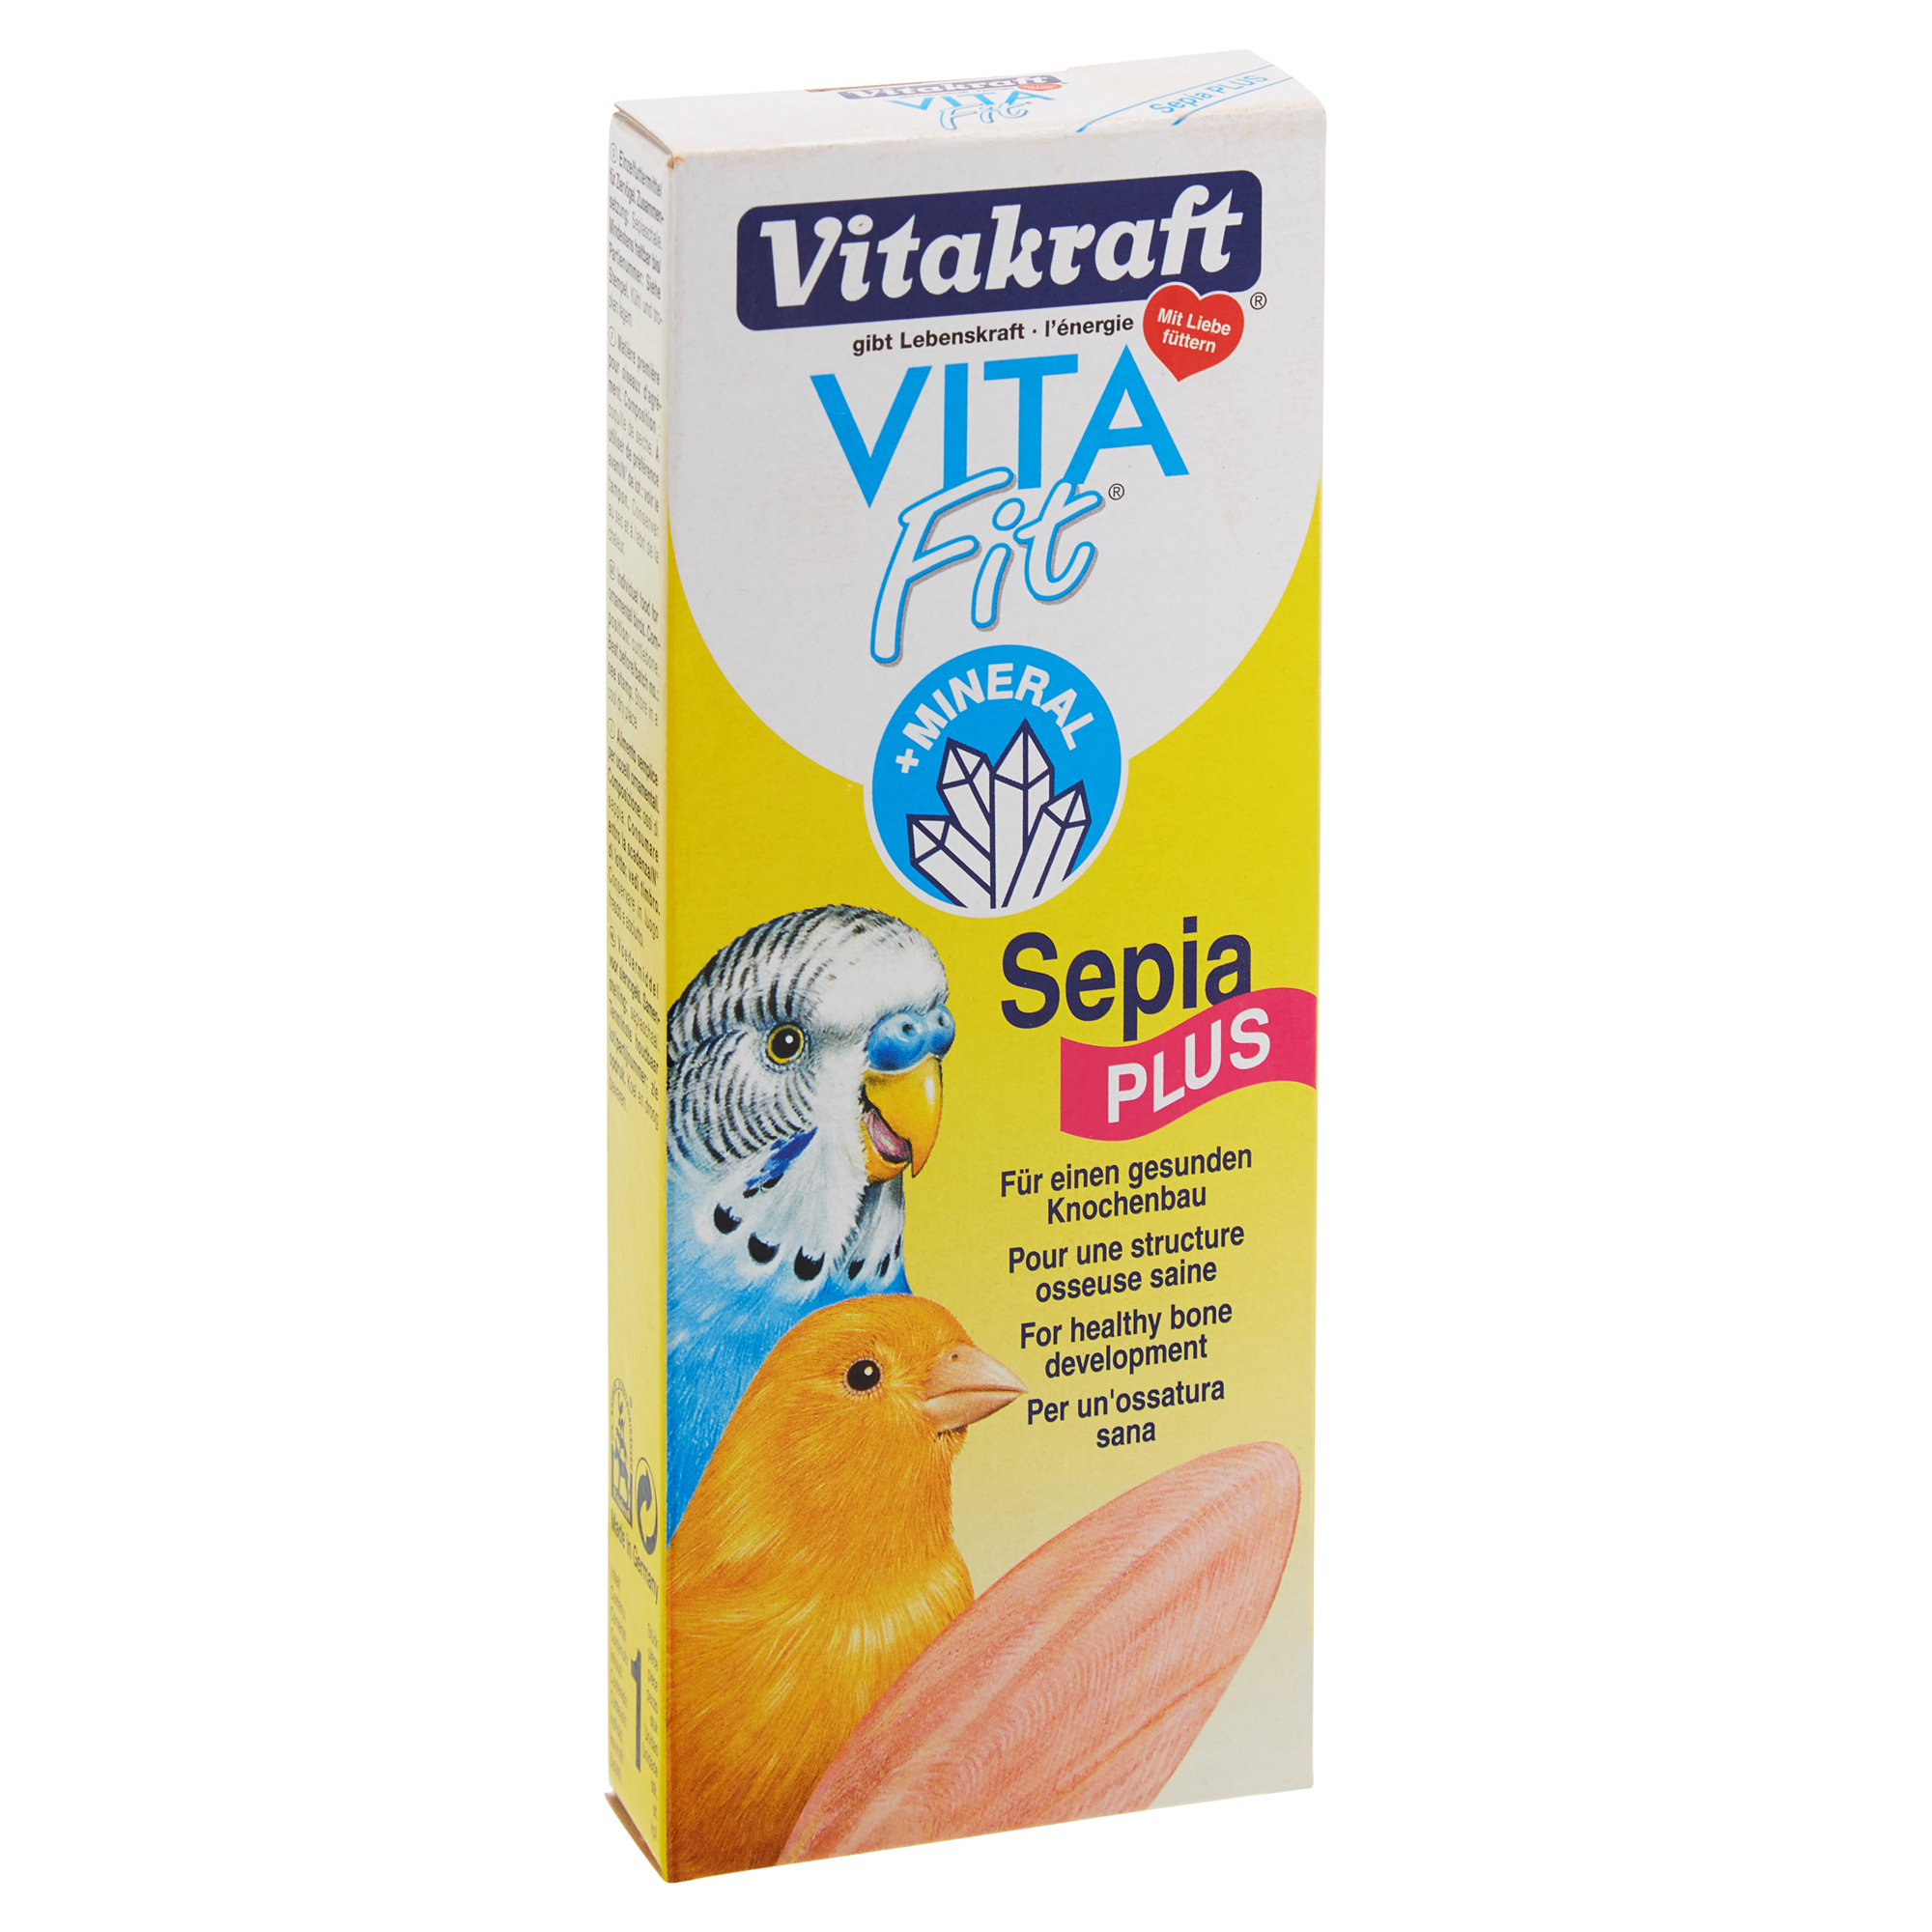 Vogelzusatzfutter "Vita Fit®" Sepia plus + product picture